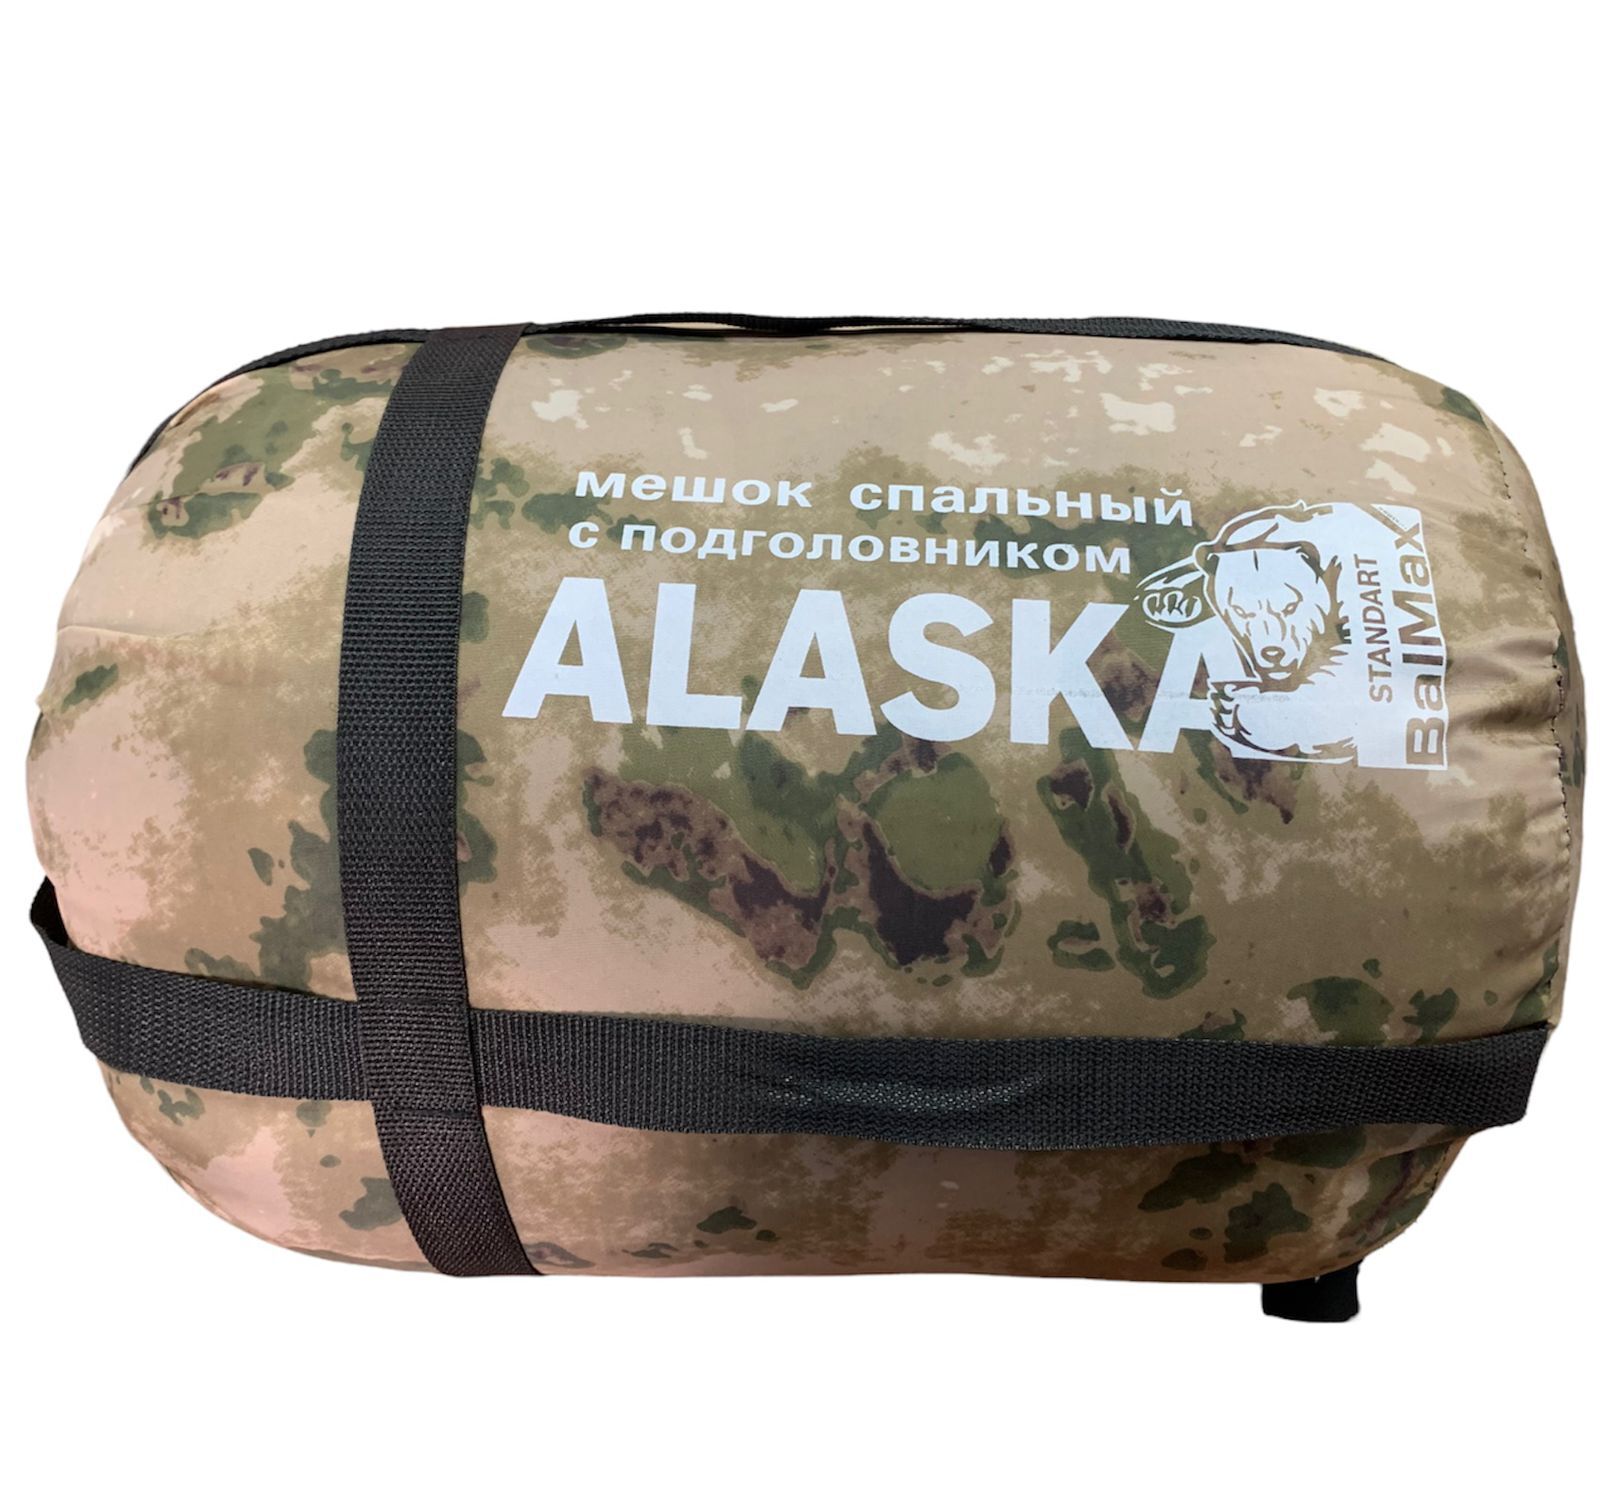 Спальный мешок Huntsman "Аляска" -15с. Спальный мешок Alaska одеяло +20 с. Спальный мешок Alaska одеяло +15 с. Аляска 20